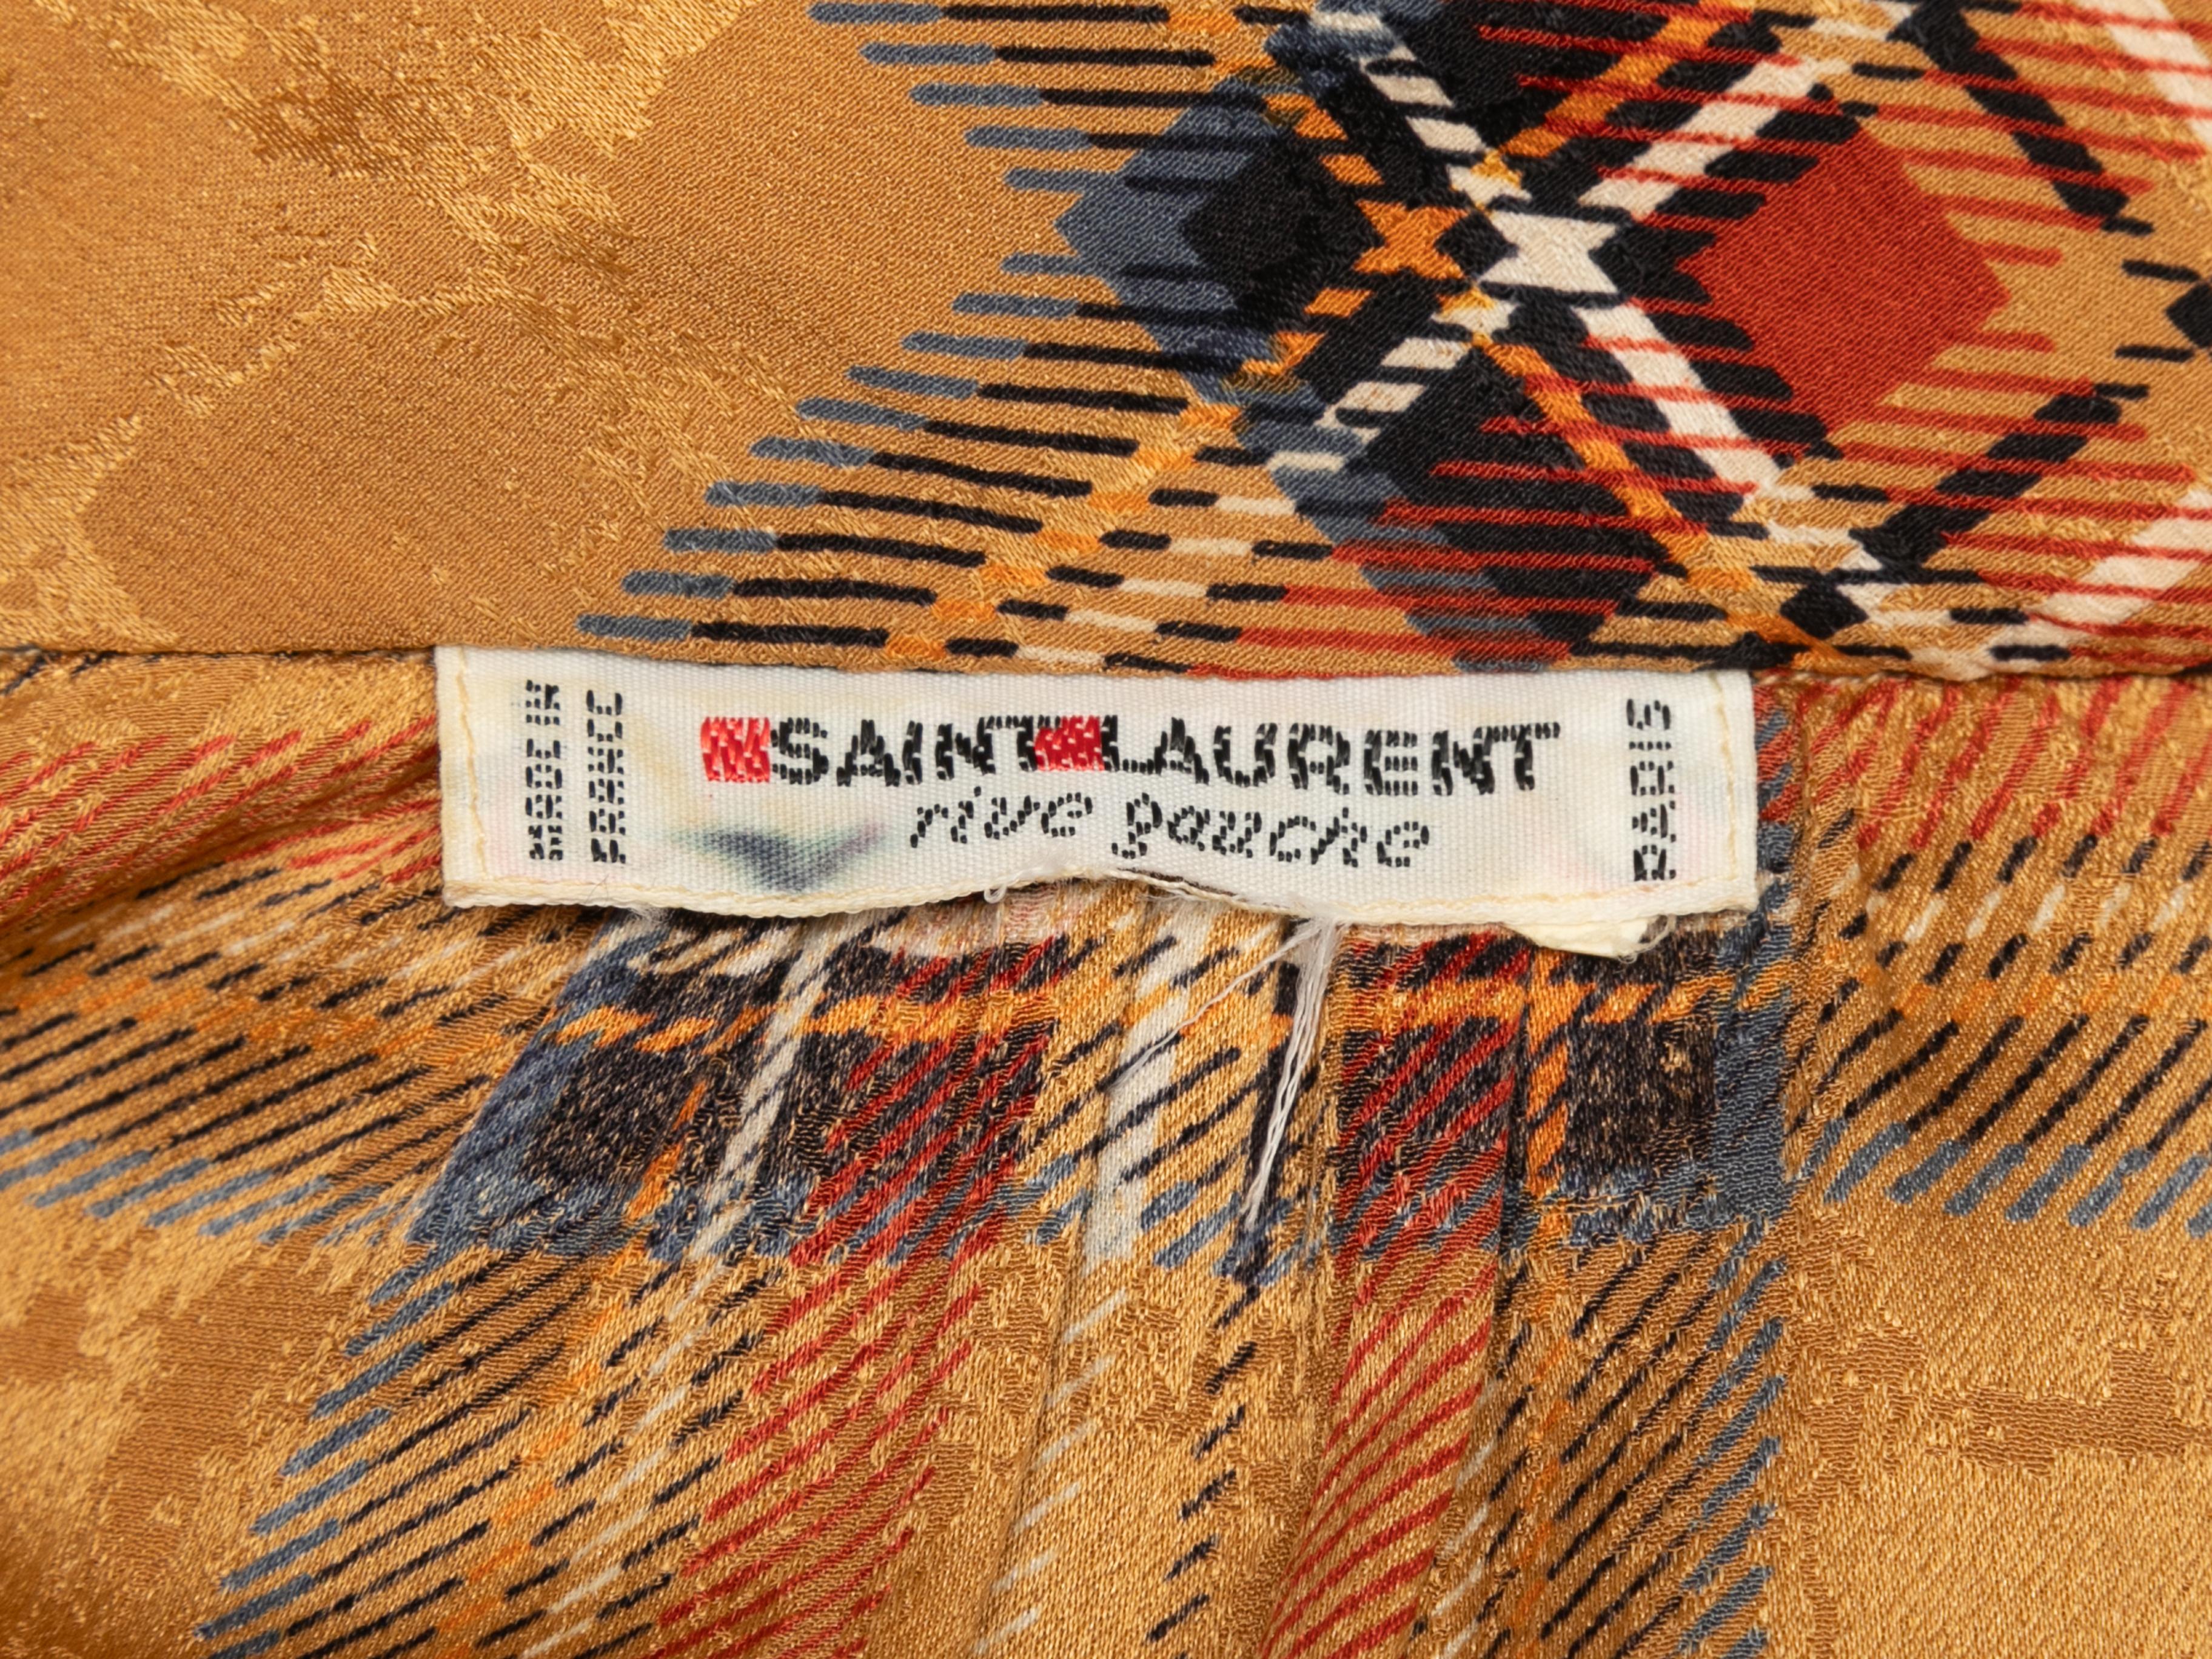 Chemisier Saint Laurent vintage orange et multicolore à carreaux et nœud lavallière, taille US S/M 1